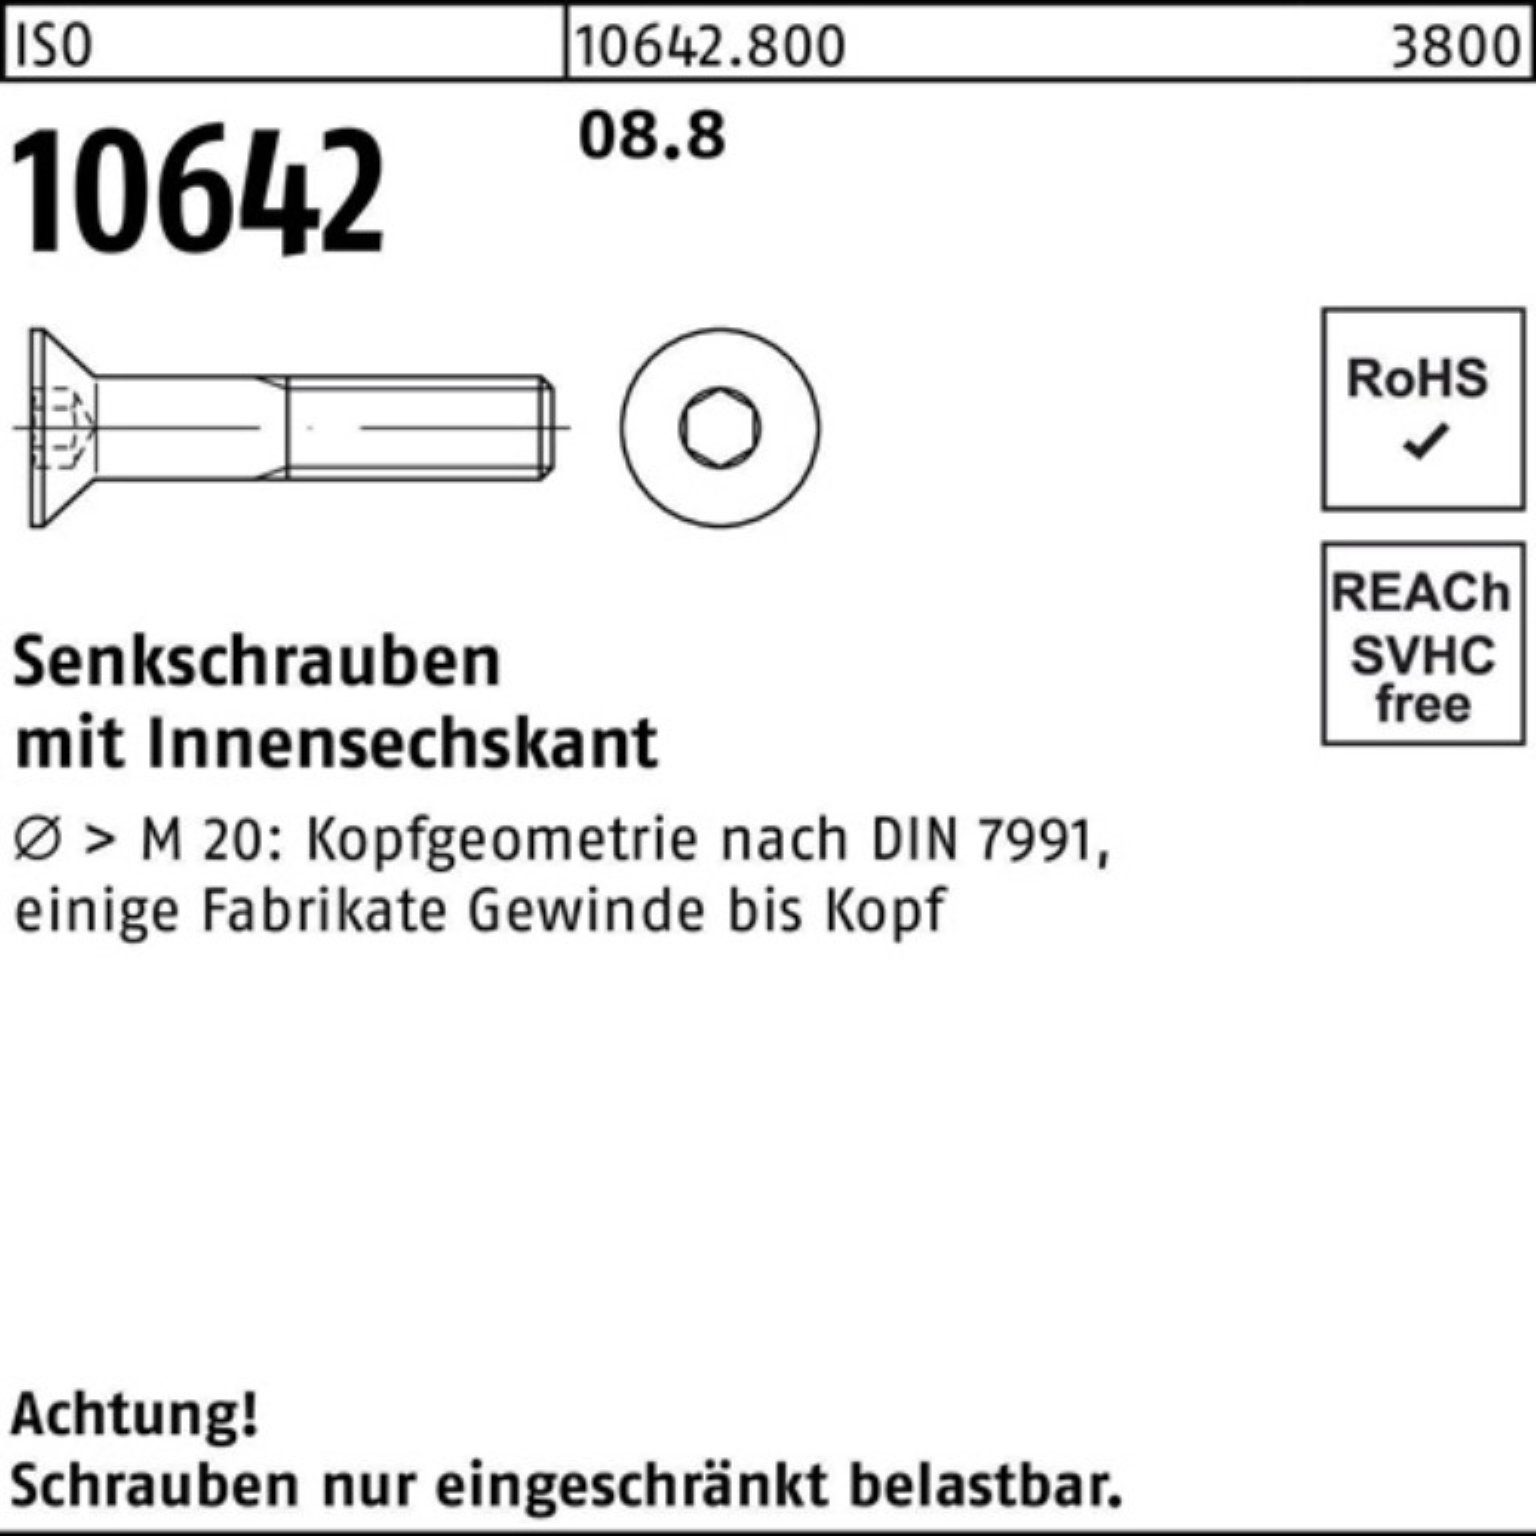 Innen-6kt 500er ISO ISO M3x Reyher 500 Pack Senkschraube 22 10642 Stück Senkschraube 8.8